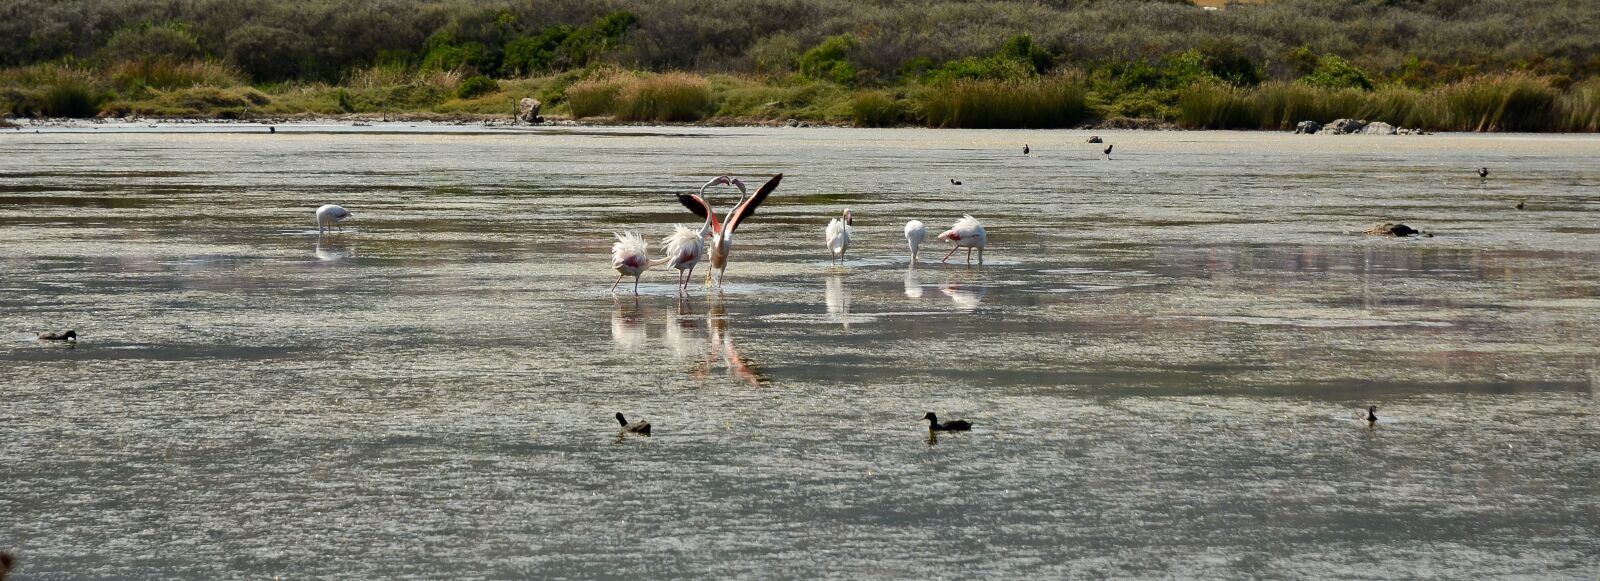 Nikon D7000 sample photo. Flamingos, animals, nature photography